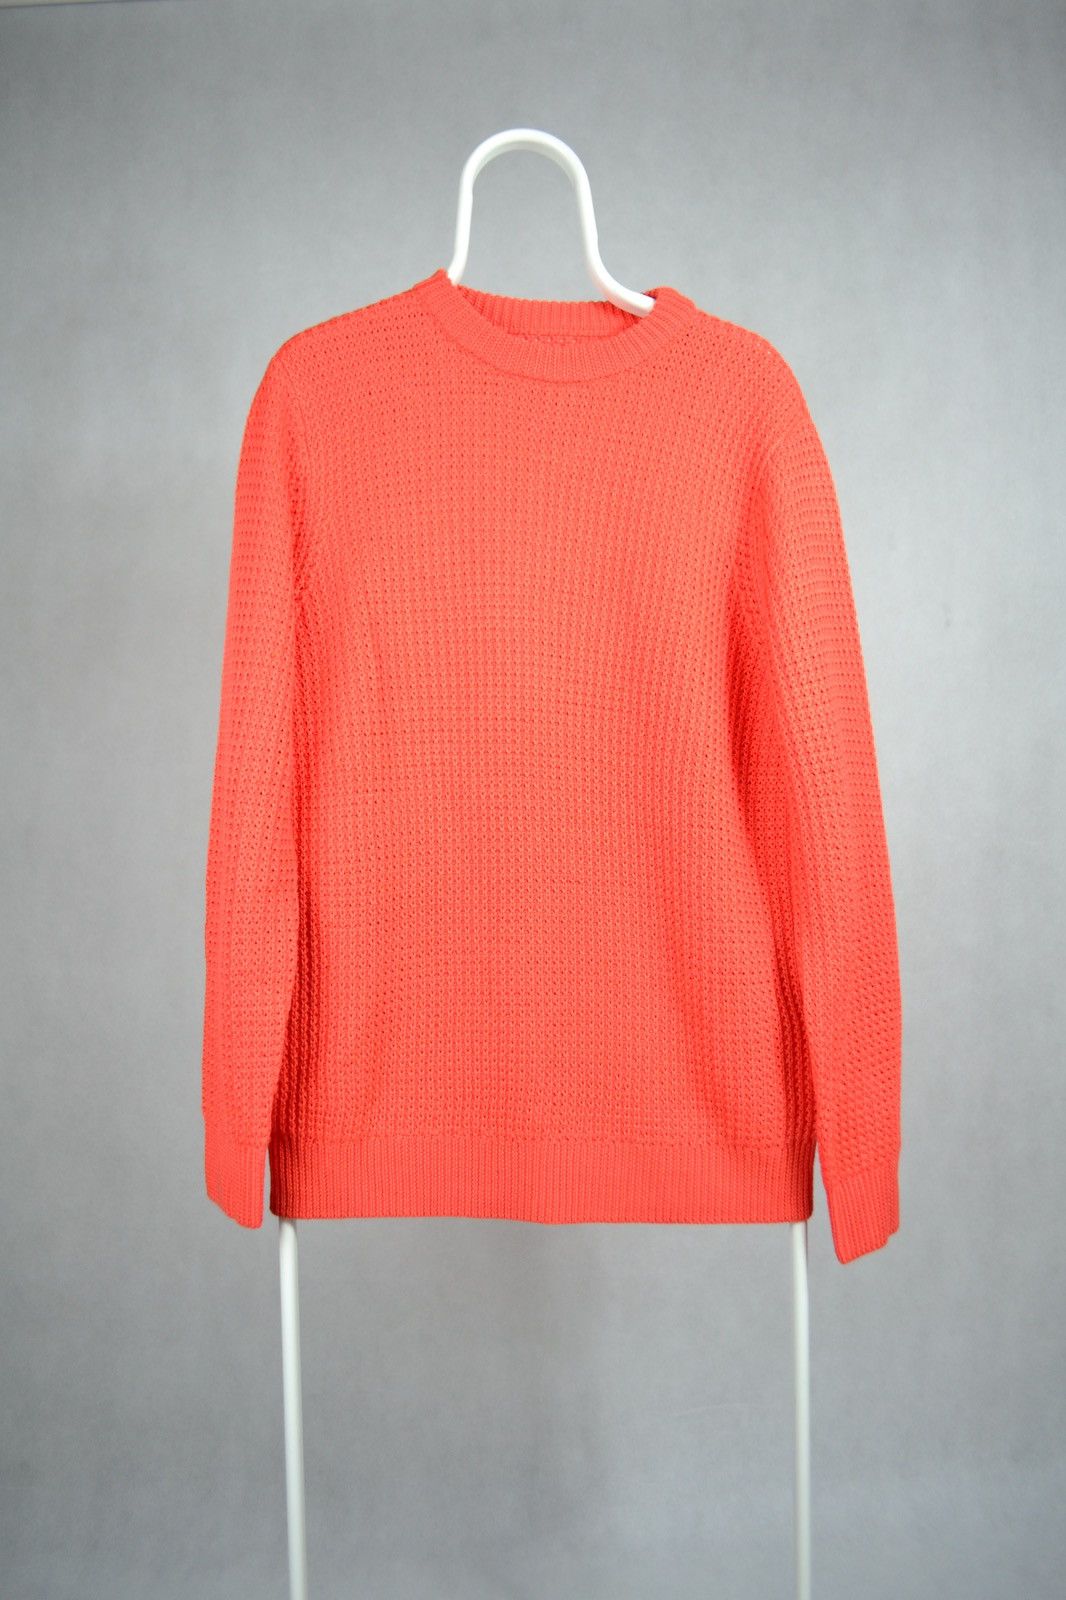 Palace Palace sweater C-Hunky Knit size L Size US L / EU 52-54 / 3 - 1 Preview